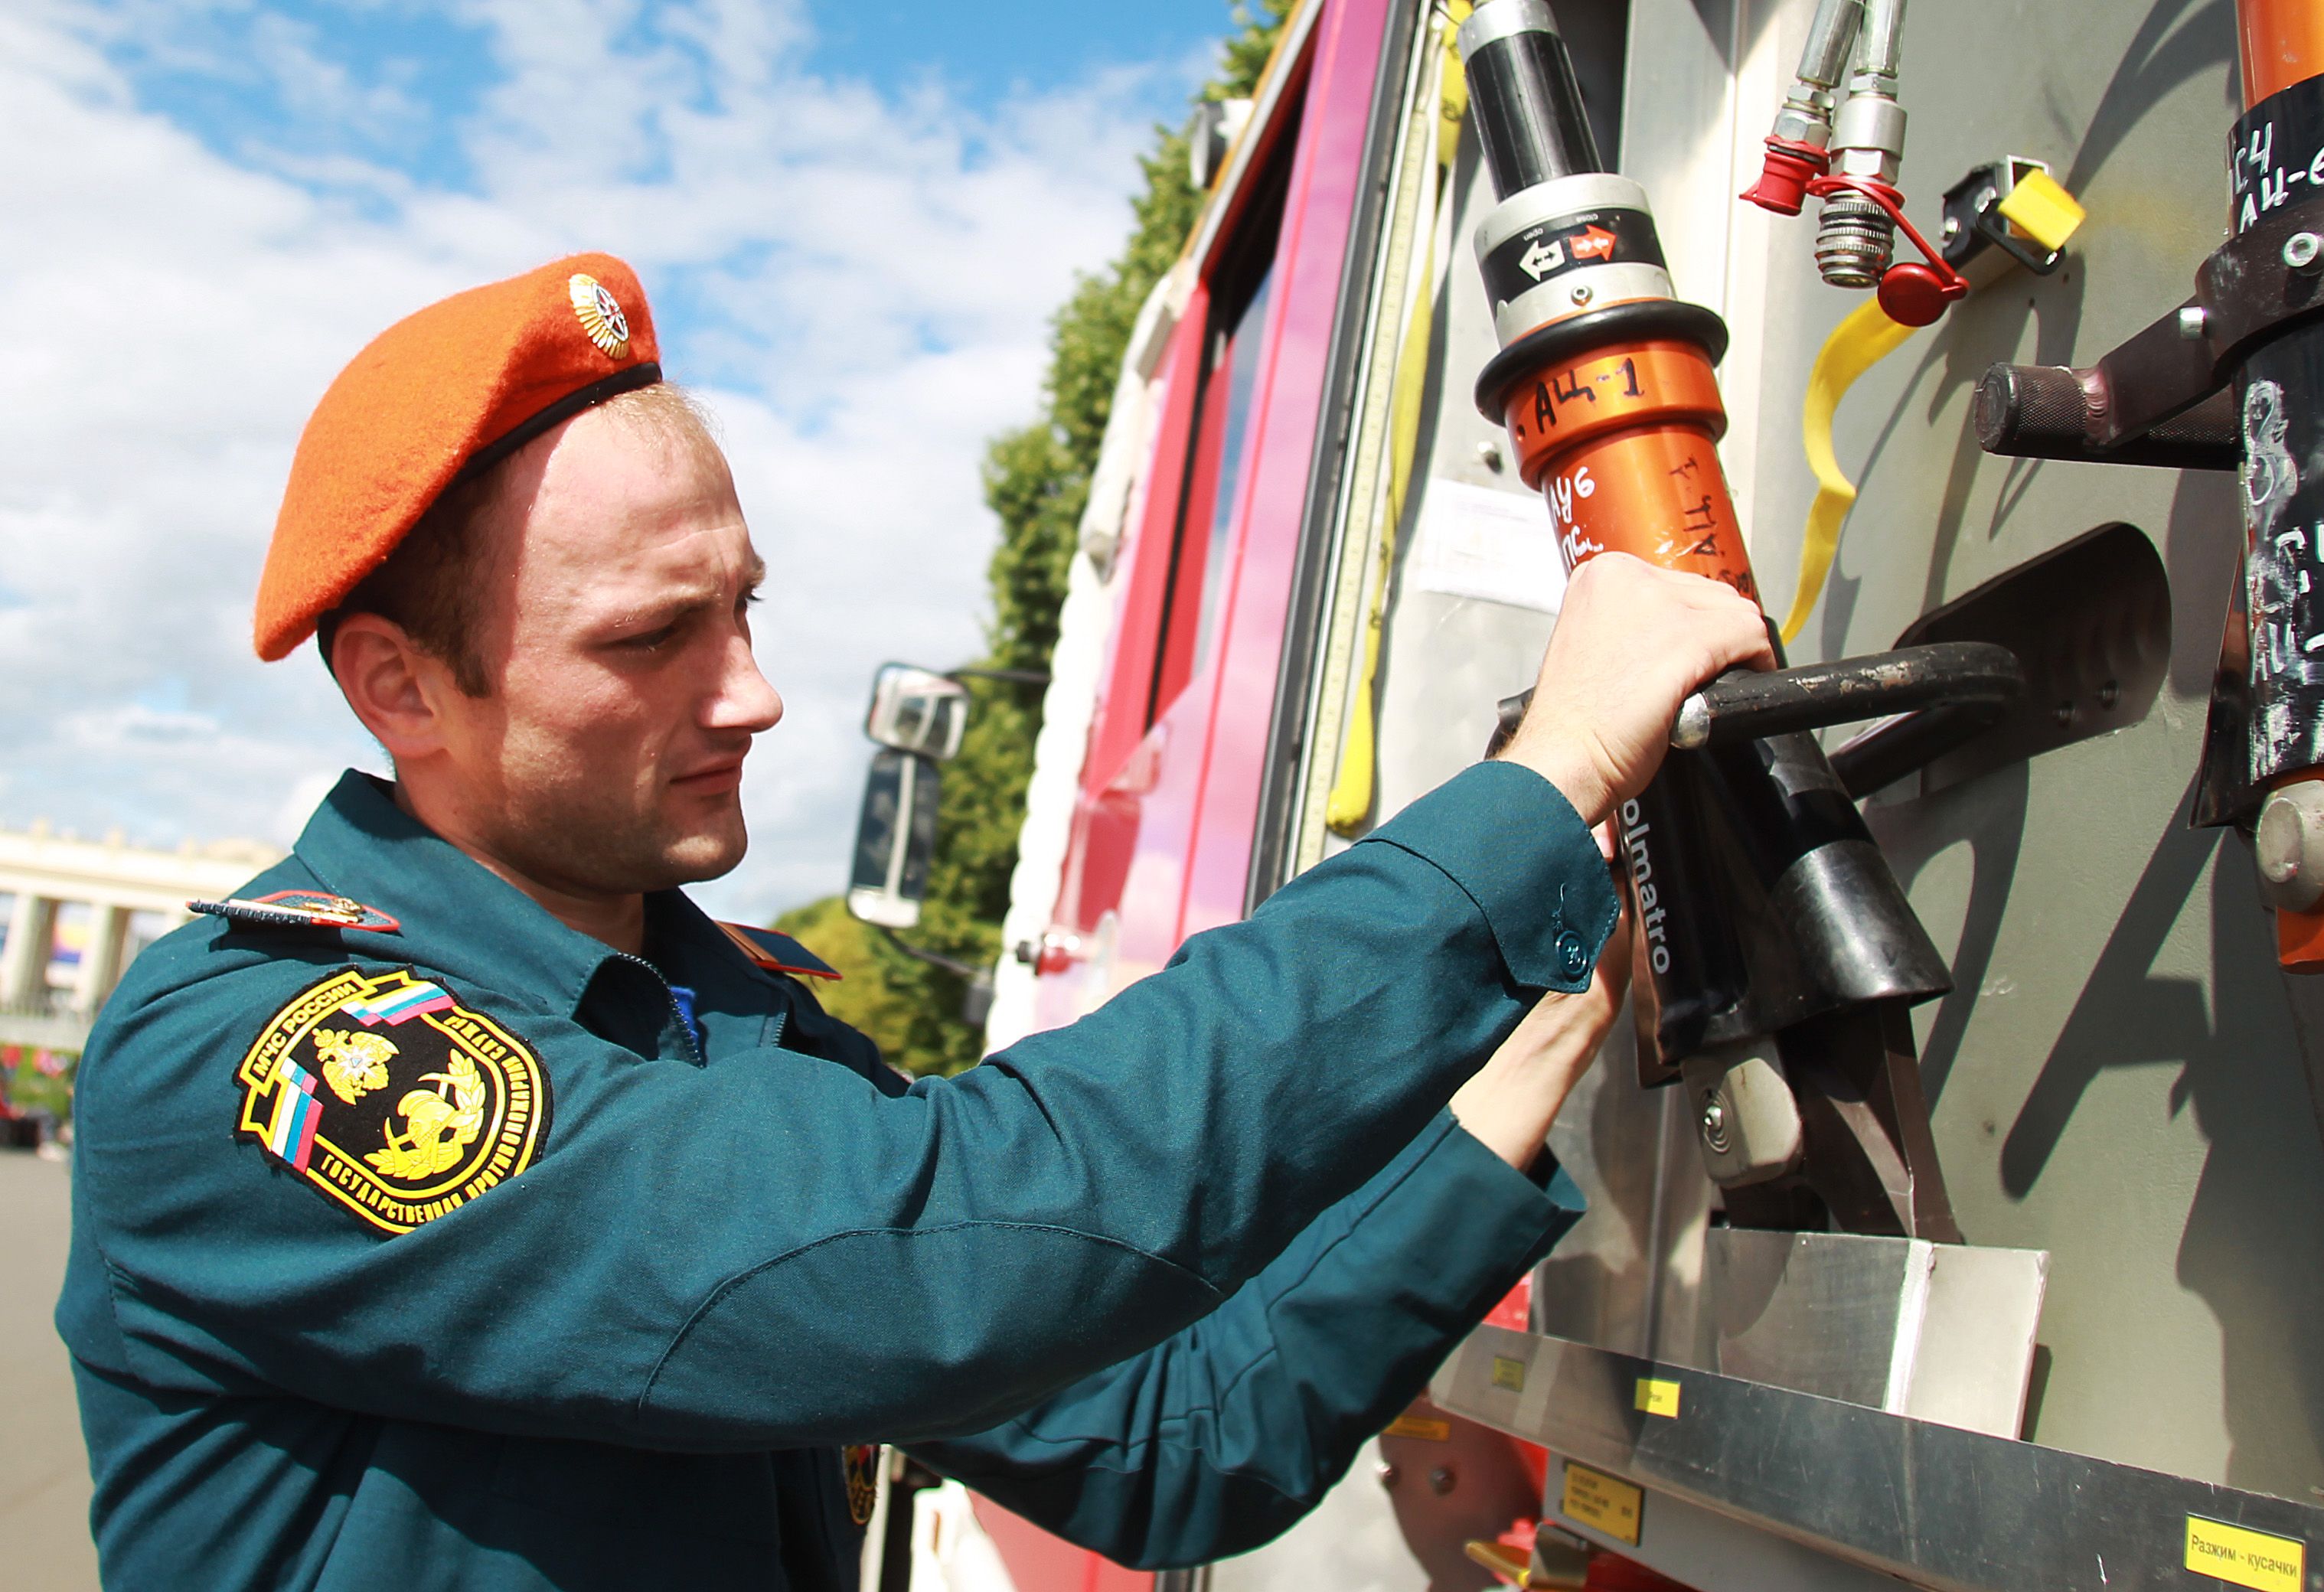 июля 2019 года. Сотрудник МЧС Илья Селезнев показывает работу пожарного рукава (